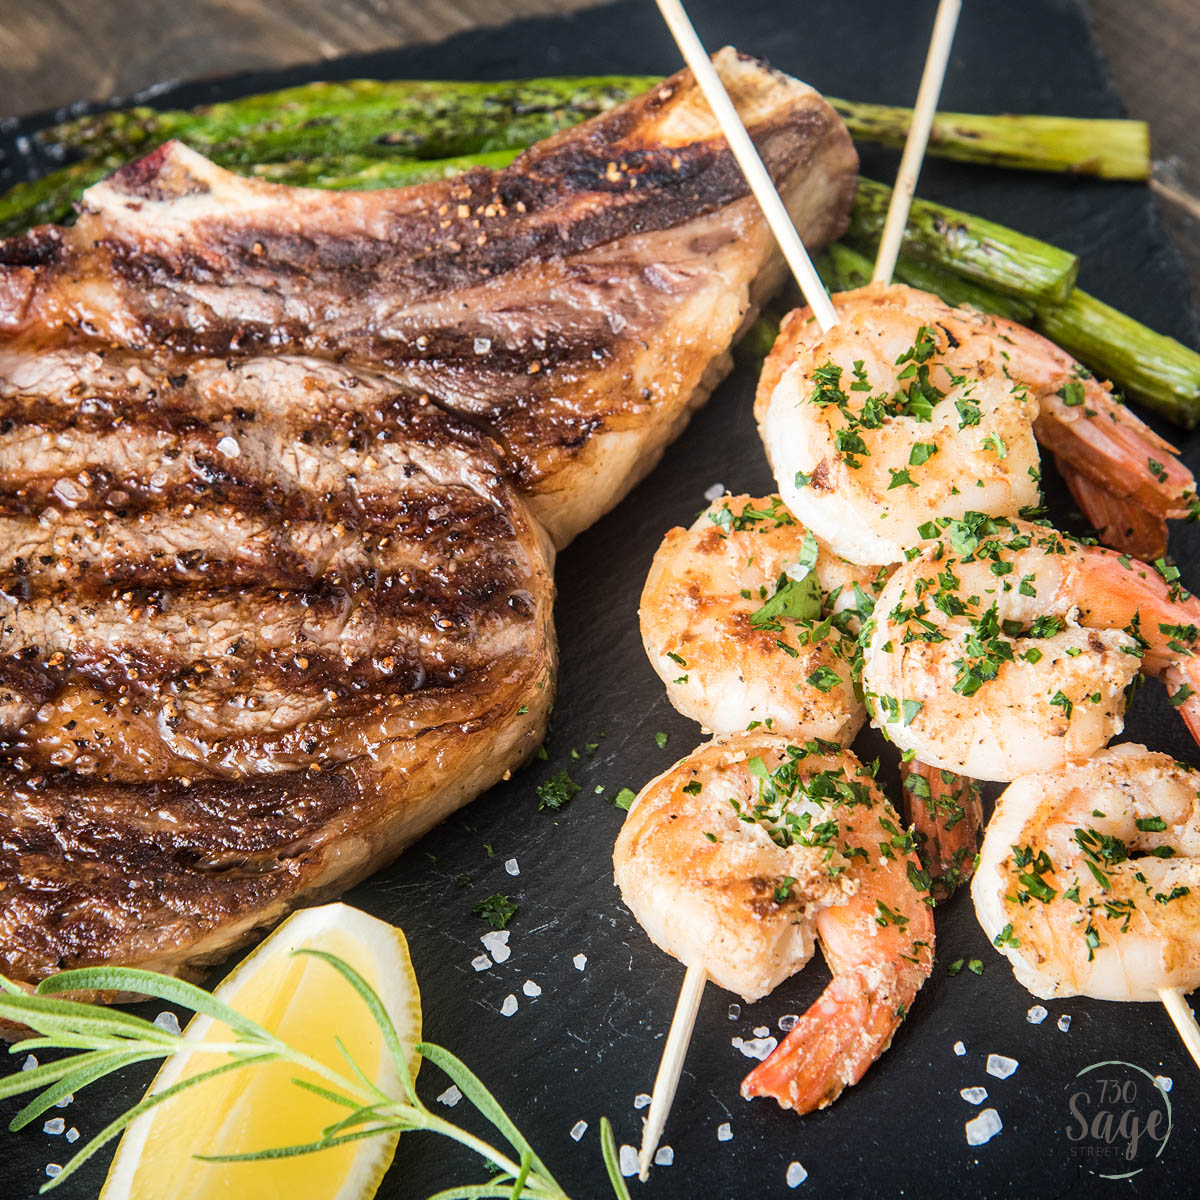 Steak and shrimp recipes